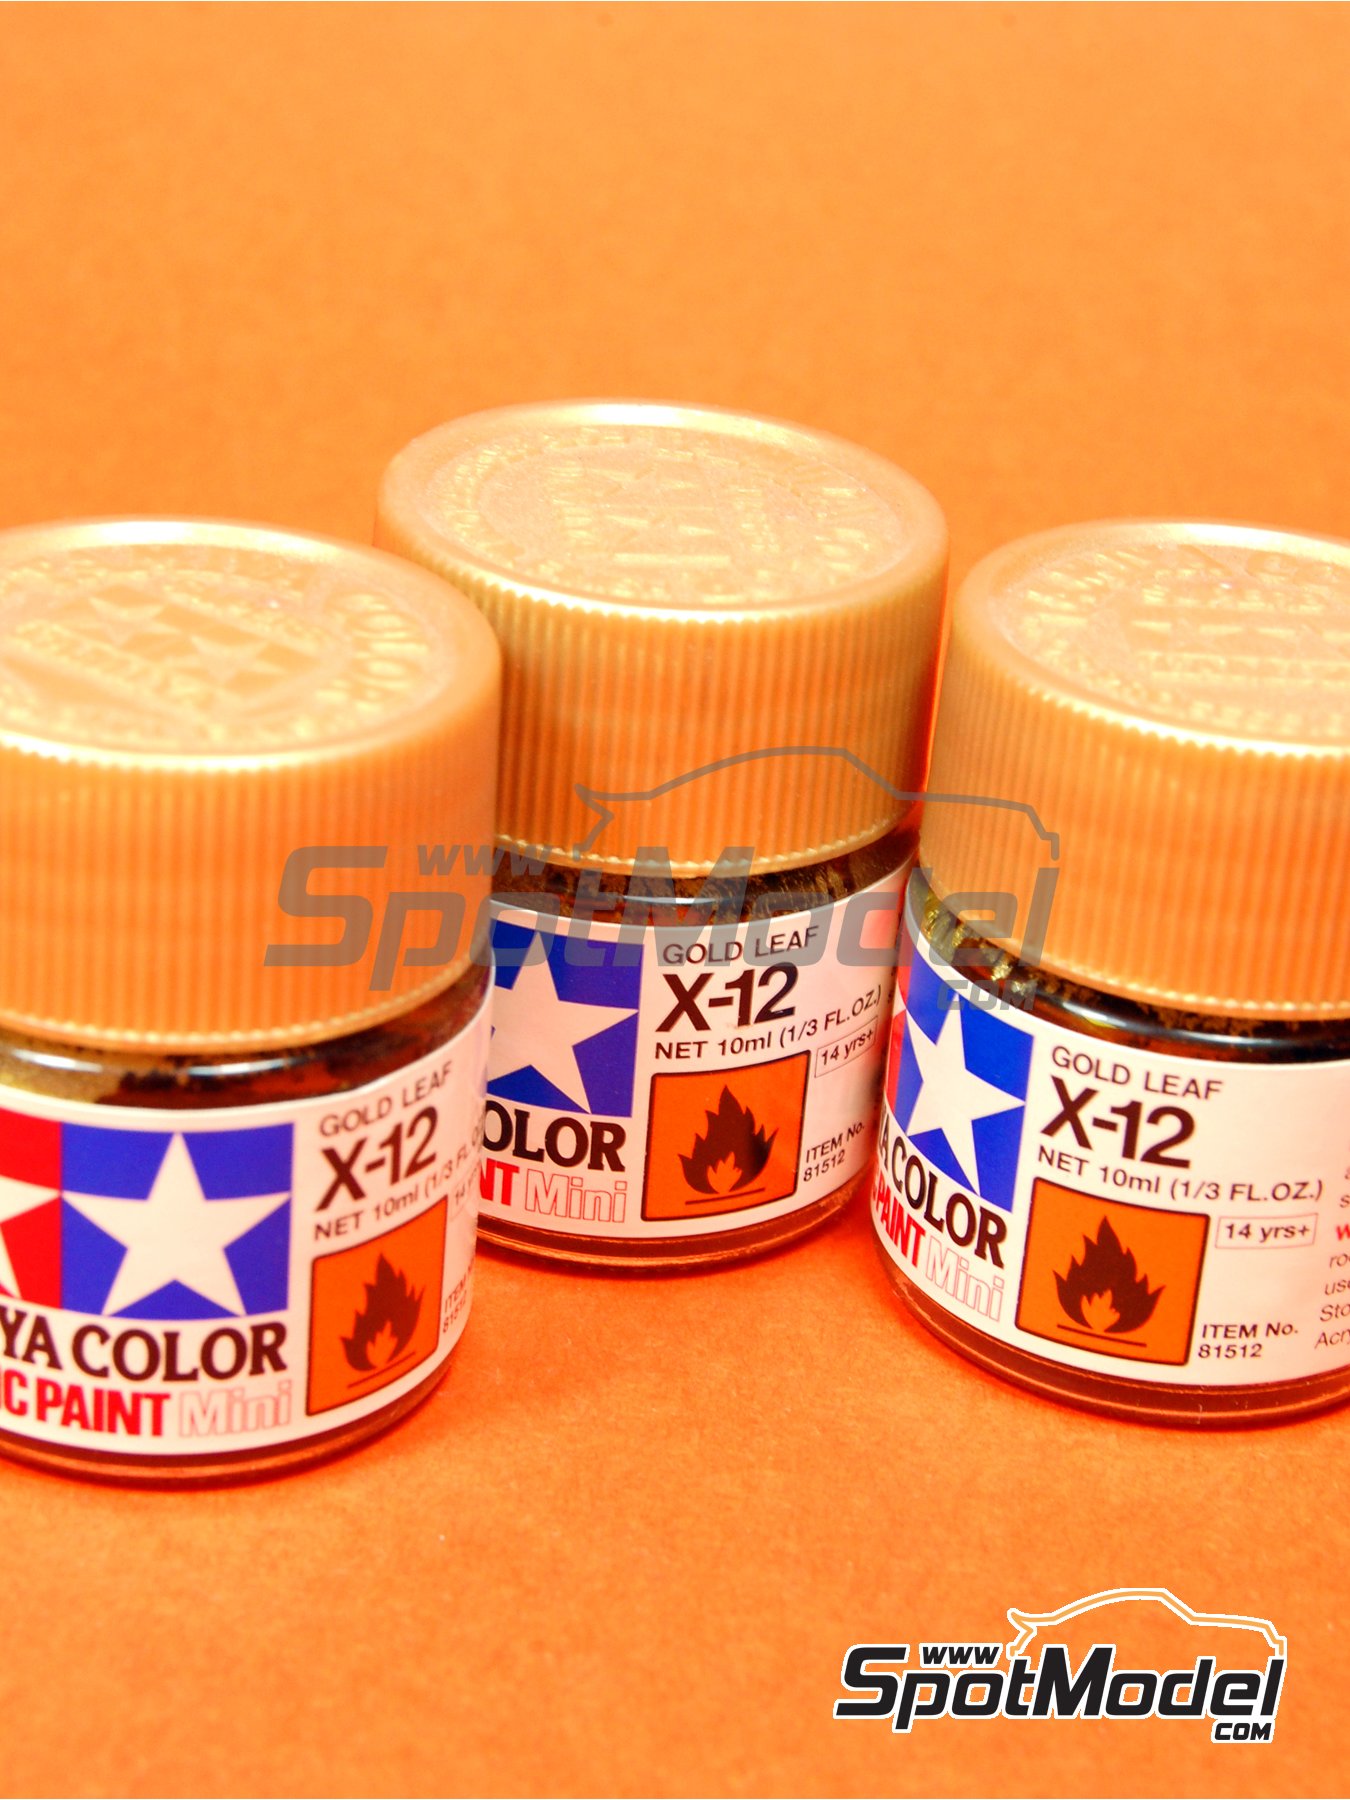 Tamiya 81512: Acrylic paint Gold leaf X-12 1 x 10ml (ref. X-12